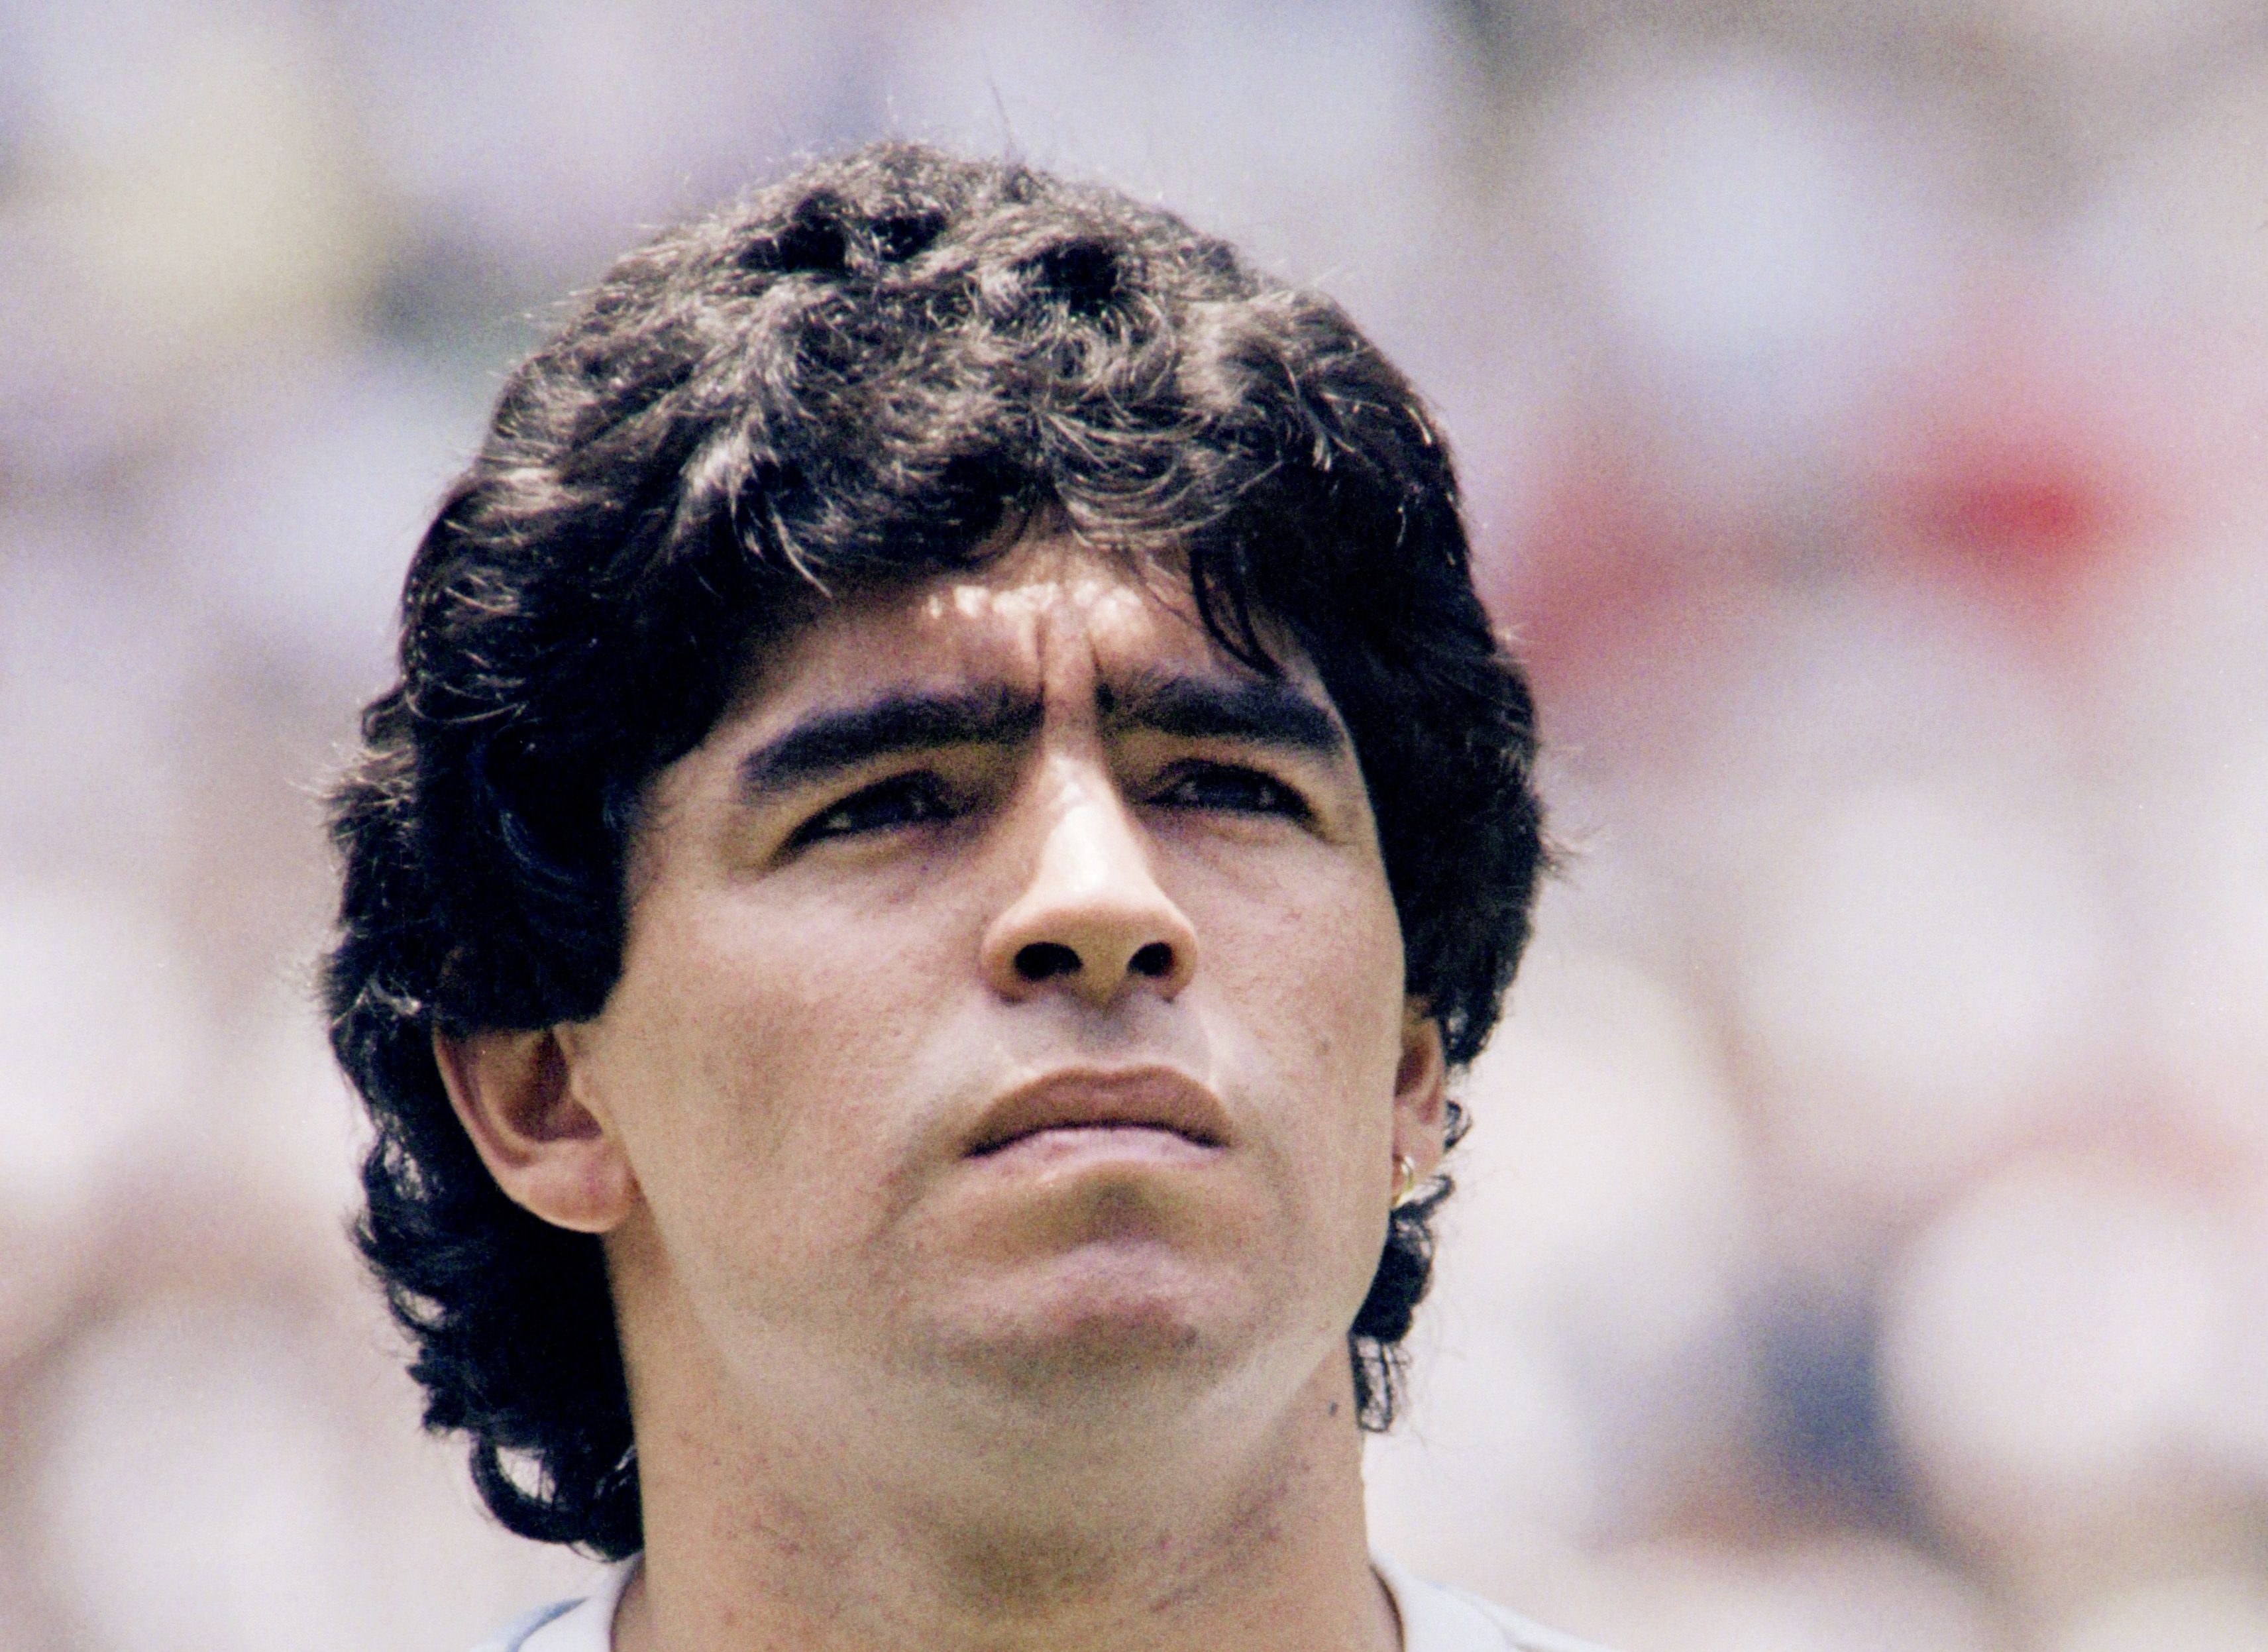 Muere Diego Maradona a 60 años